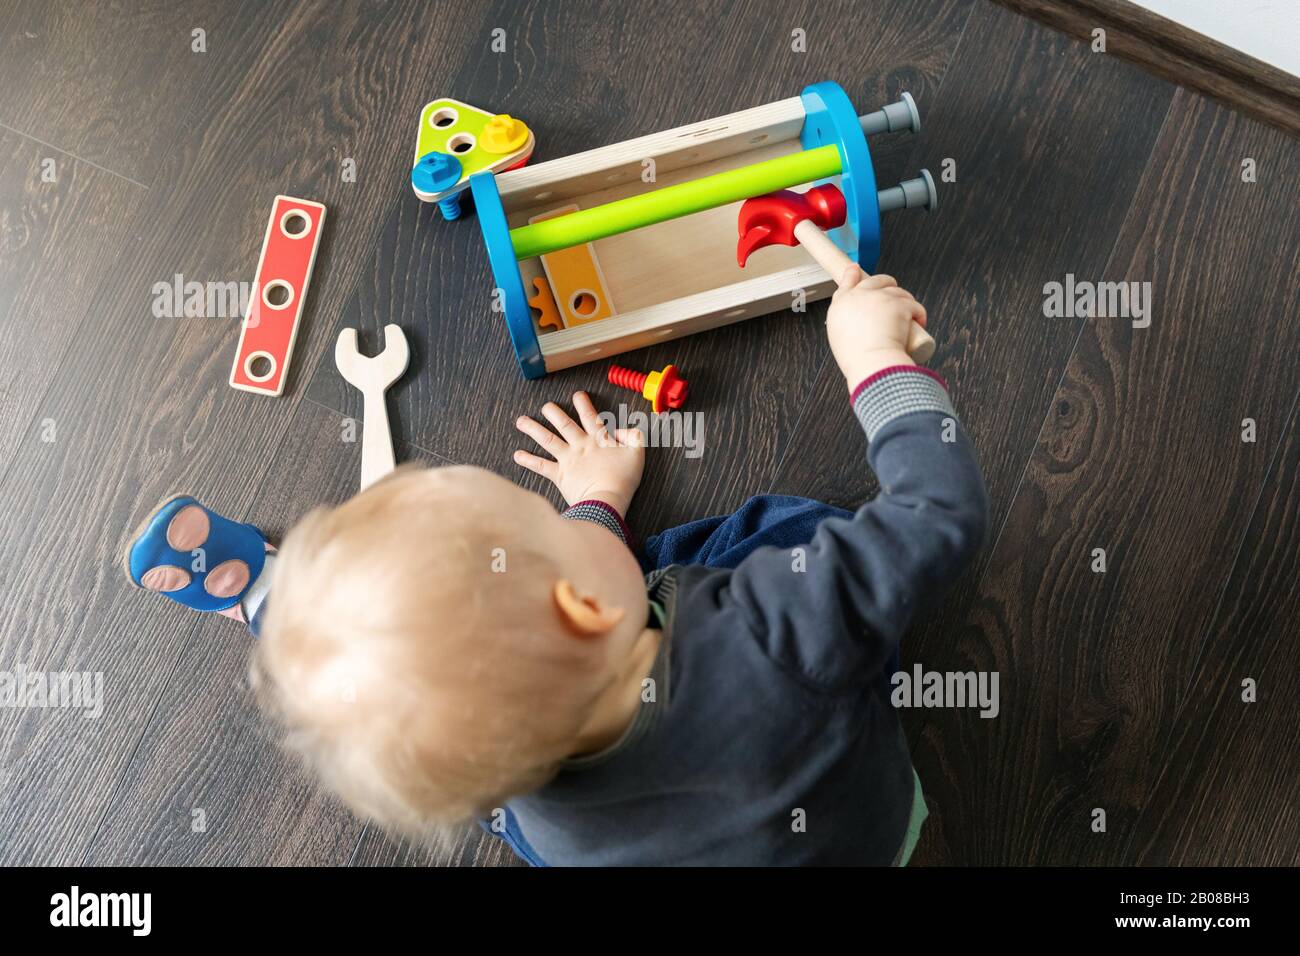 niño jugando con caja de herramientas de juguete de madera en el suelo de la casa Foto de stock